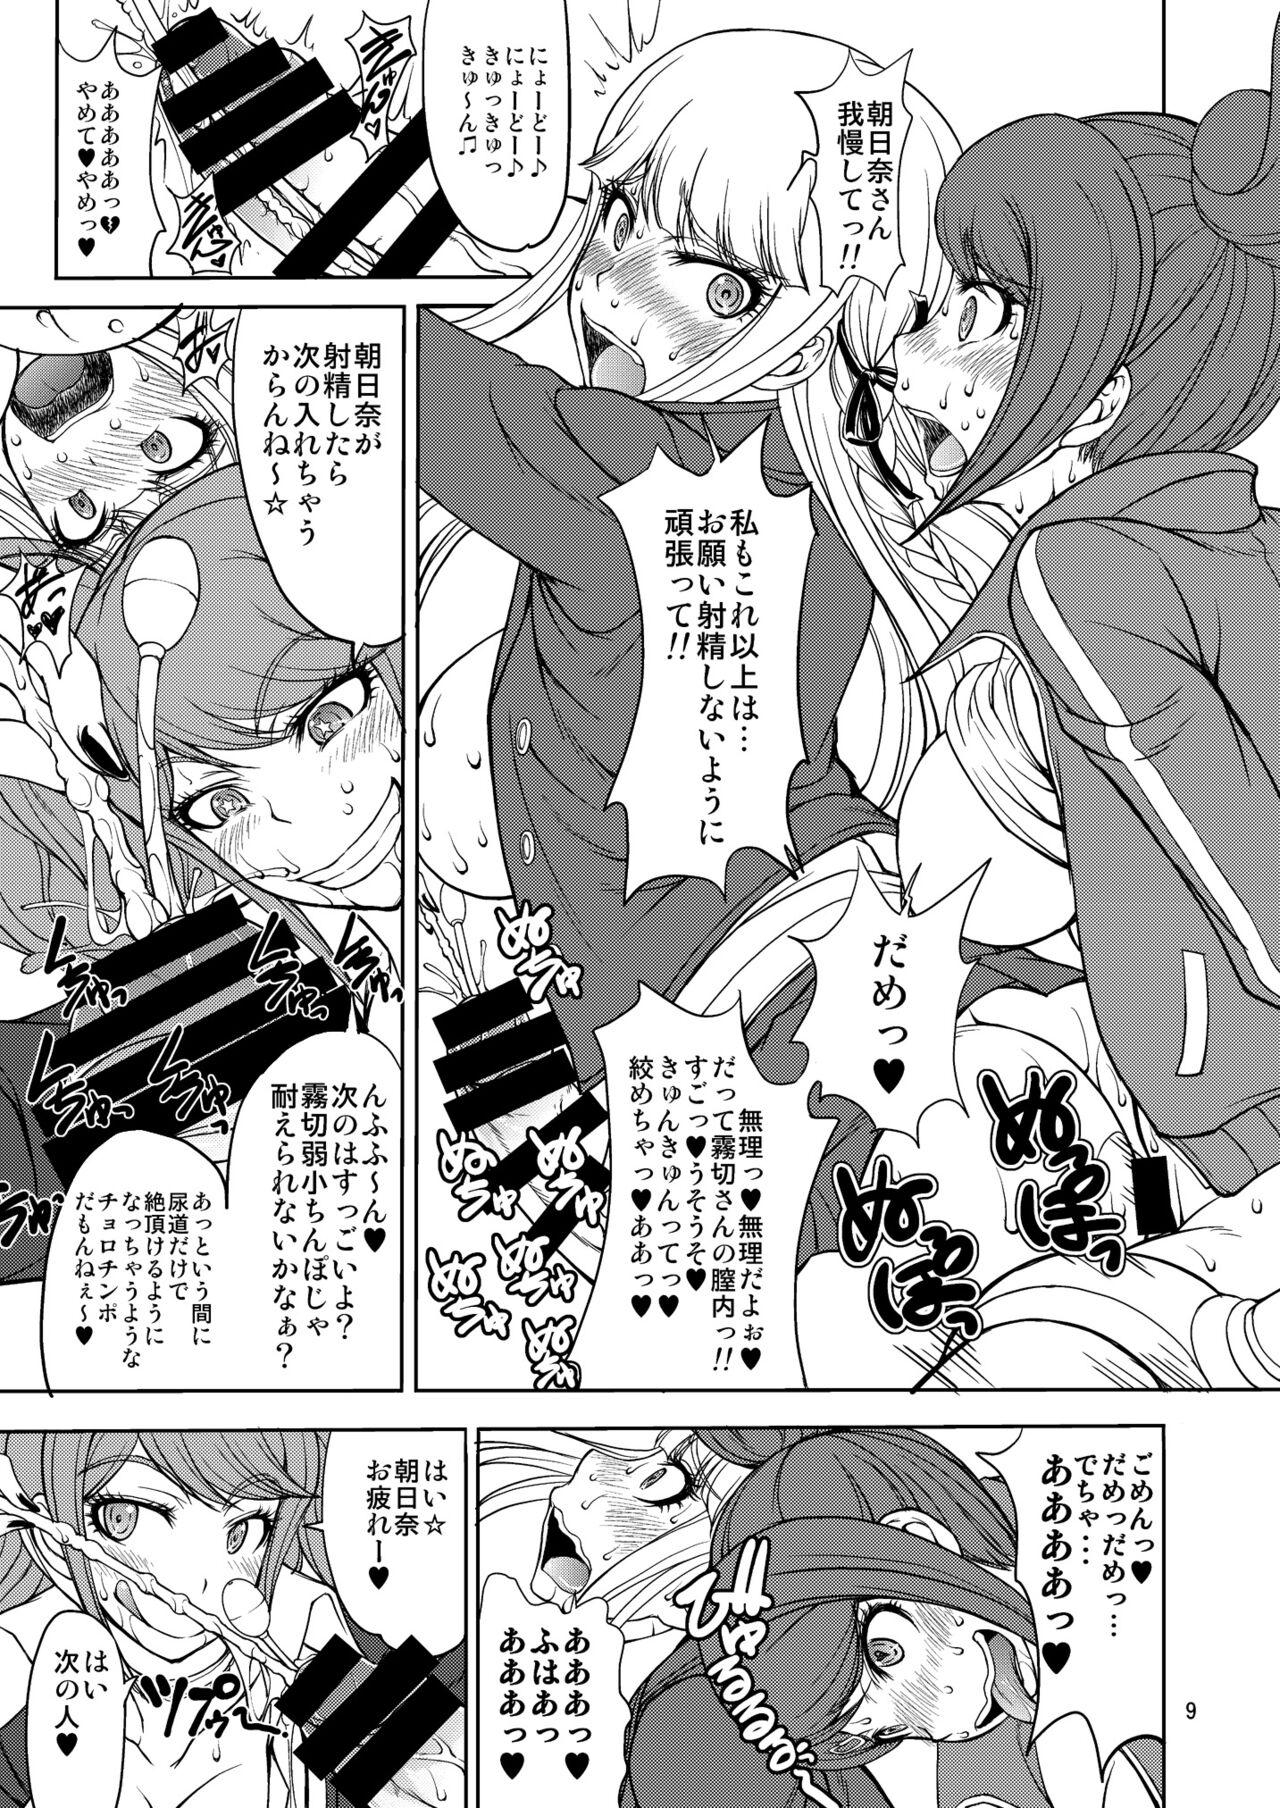 Shesafreak Enoshima-sensei no DOKKIDOKI Chouzetsubouteki Shasei Gasshuku - Danganronpa Pigtails - Page 9